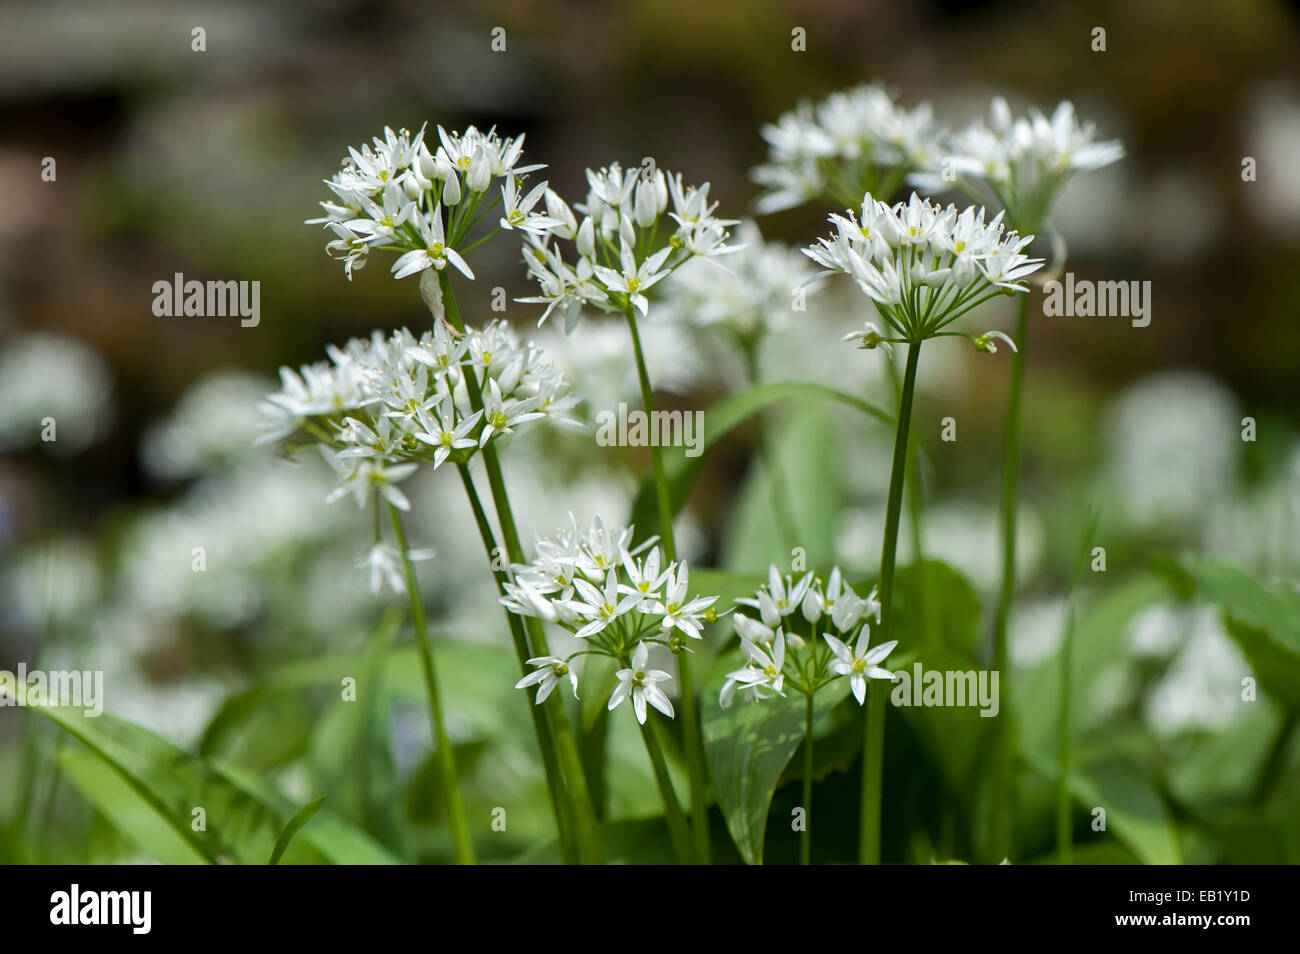 Wild Garlic or Ramsons (Allium ursinum) in flower, growing damp woodland, Cumbria, UK Stock Photo